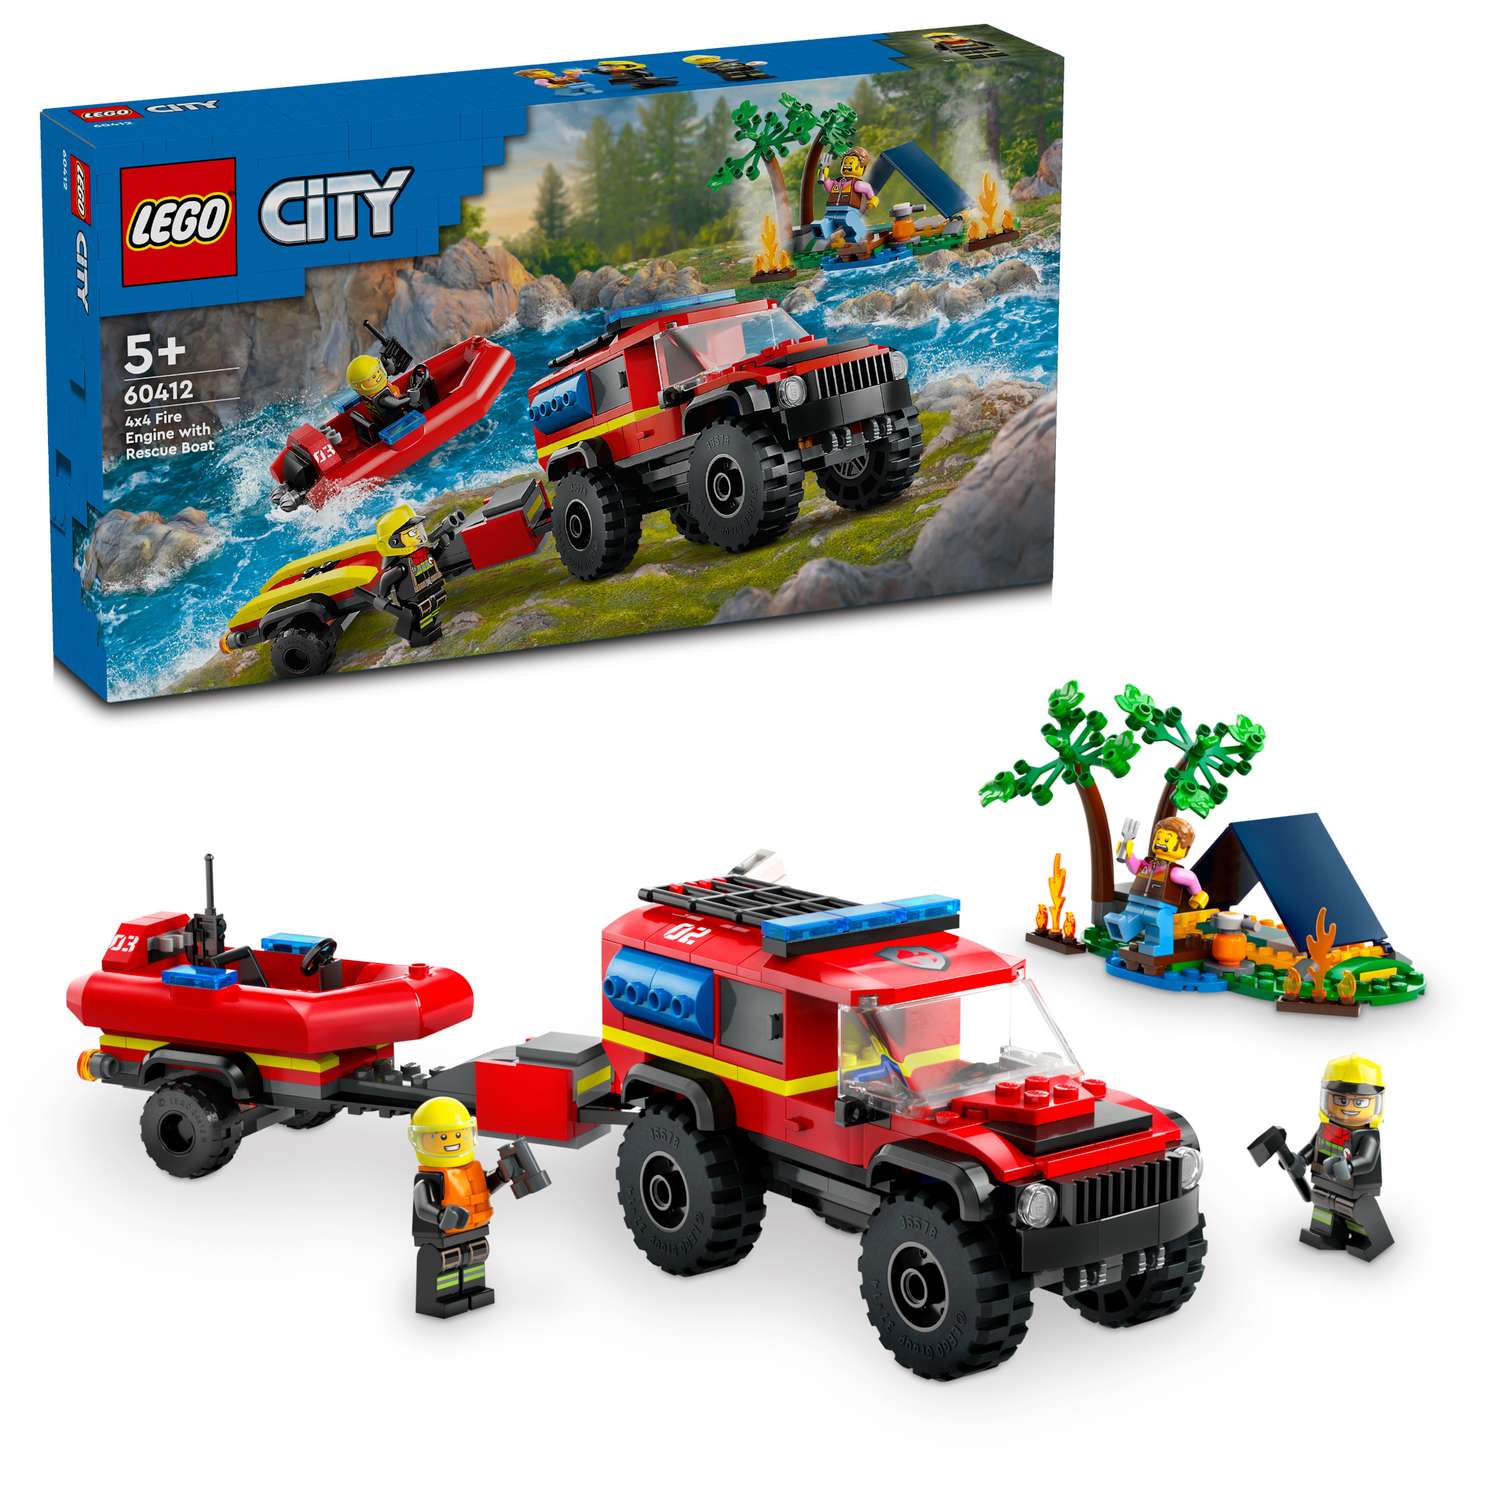 Конструктор LEGO City Пожарная машина 4x4 со спасательной лодкой 60412 - фото 1